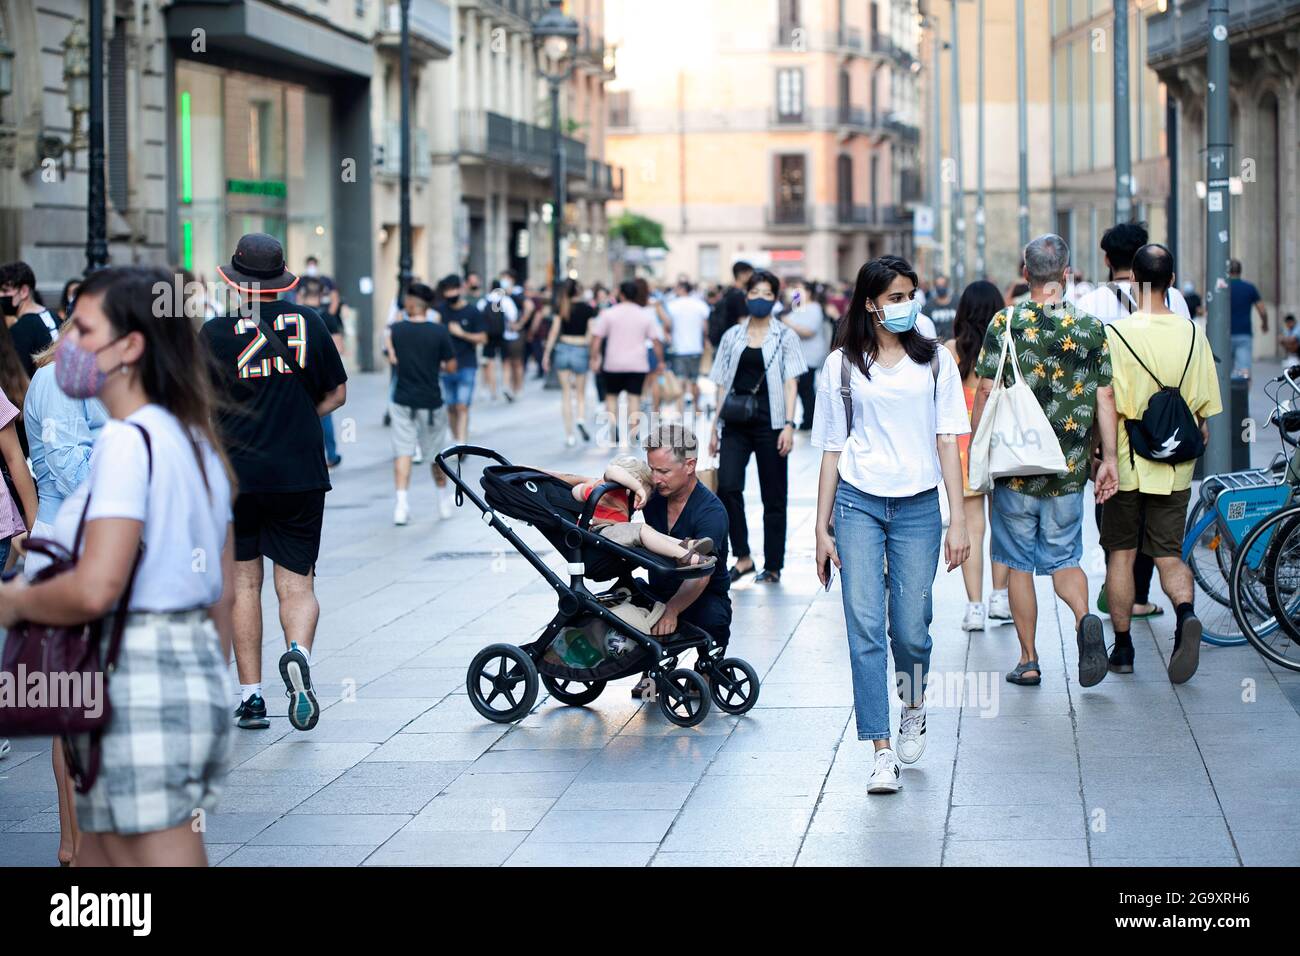 Street scene, central Barcelona, Spain. Stock Photo